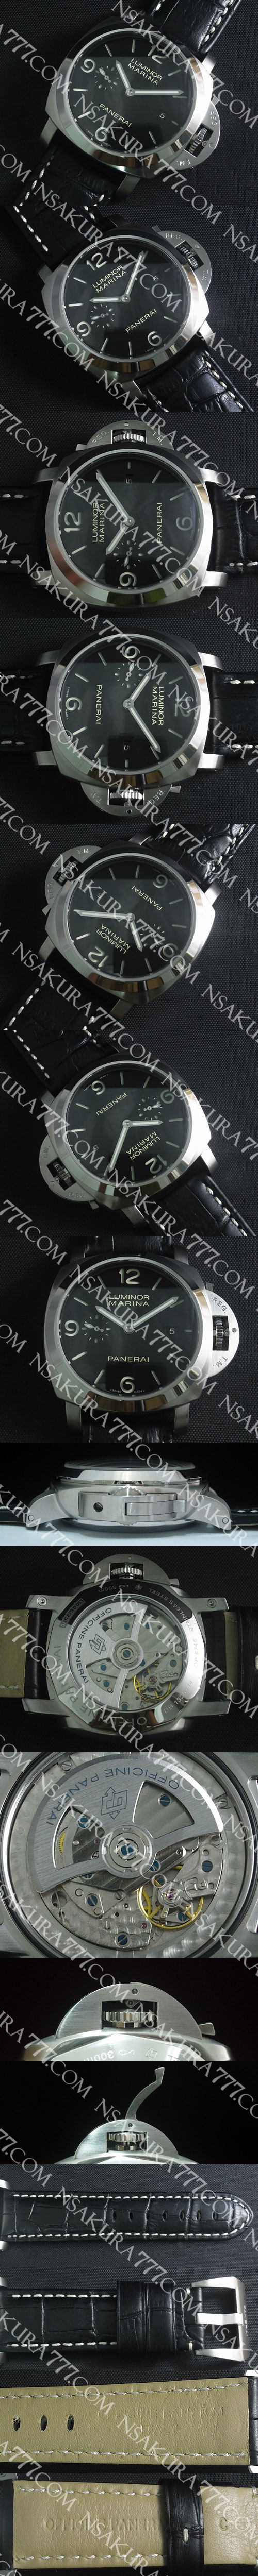 スーパーコピー時計パネライ ルミノール マリーナ PAM00312 Asian 7750搭載 - ウインドウを閉じる